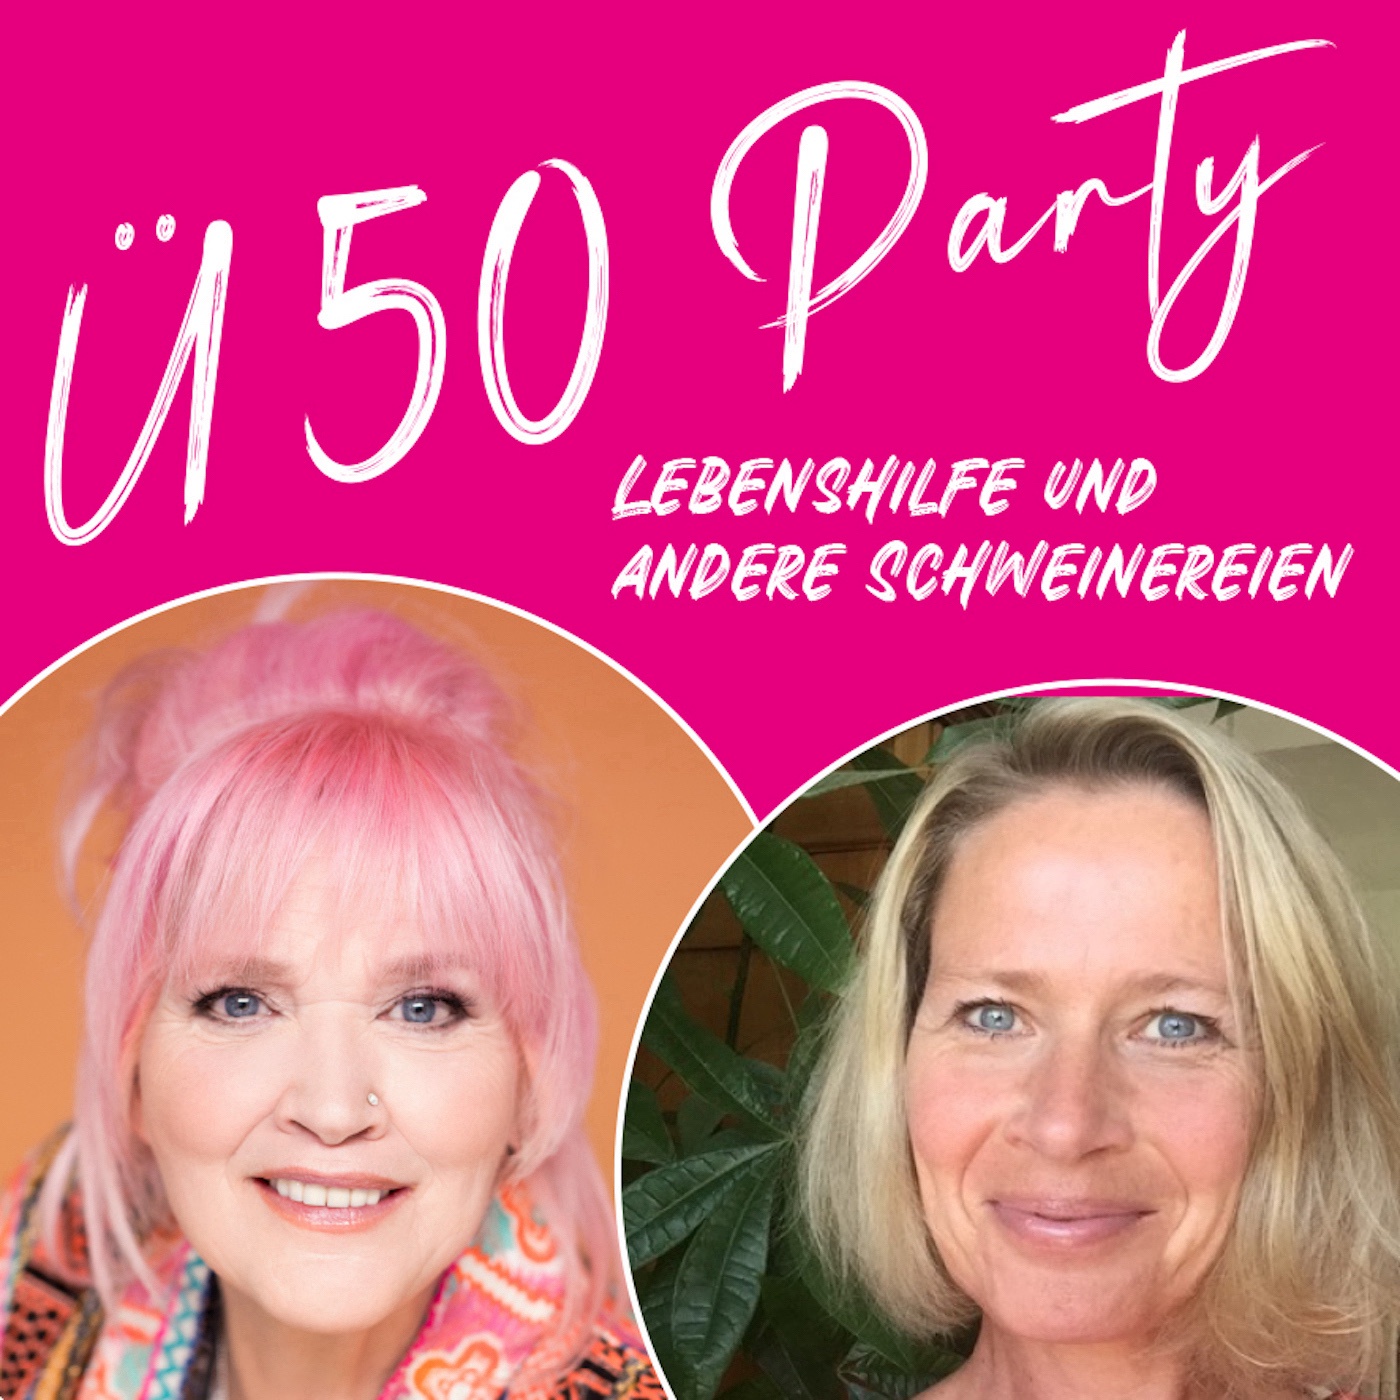 Ü50 Party - Lebenshilfe und andere Schweinereien